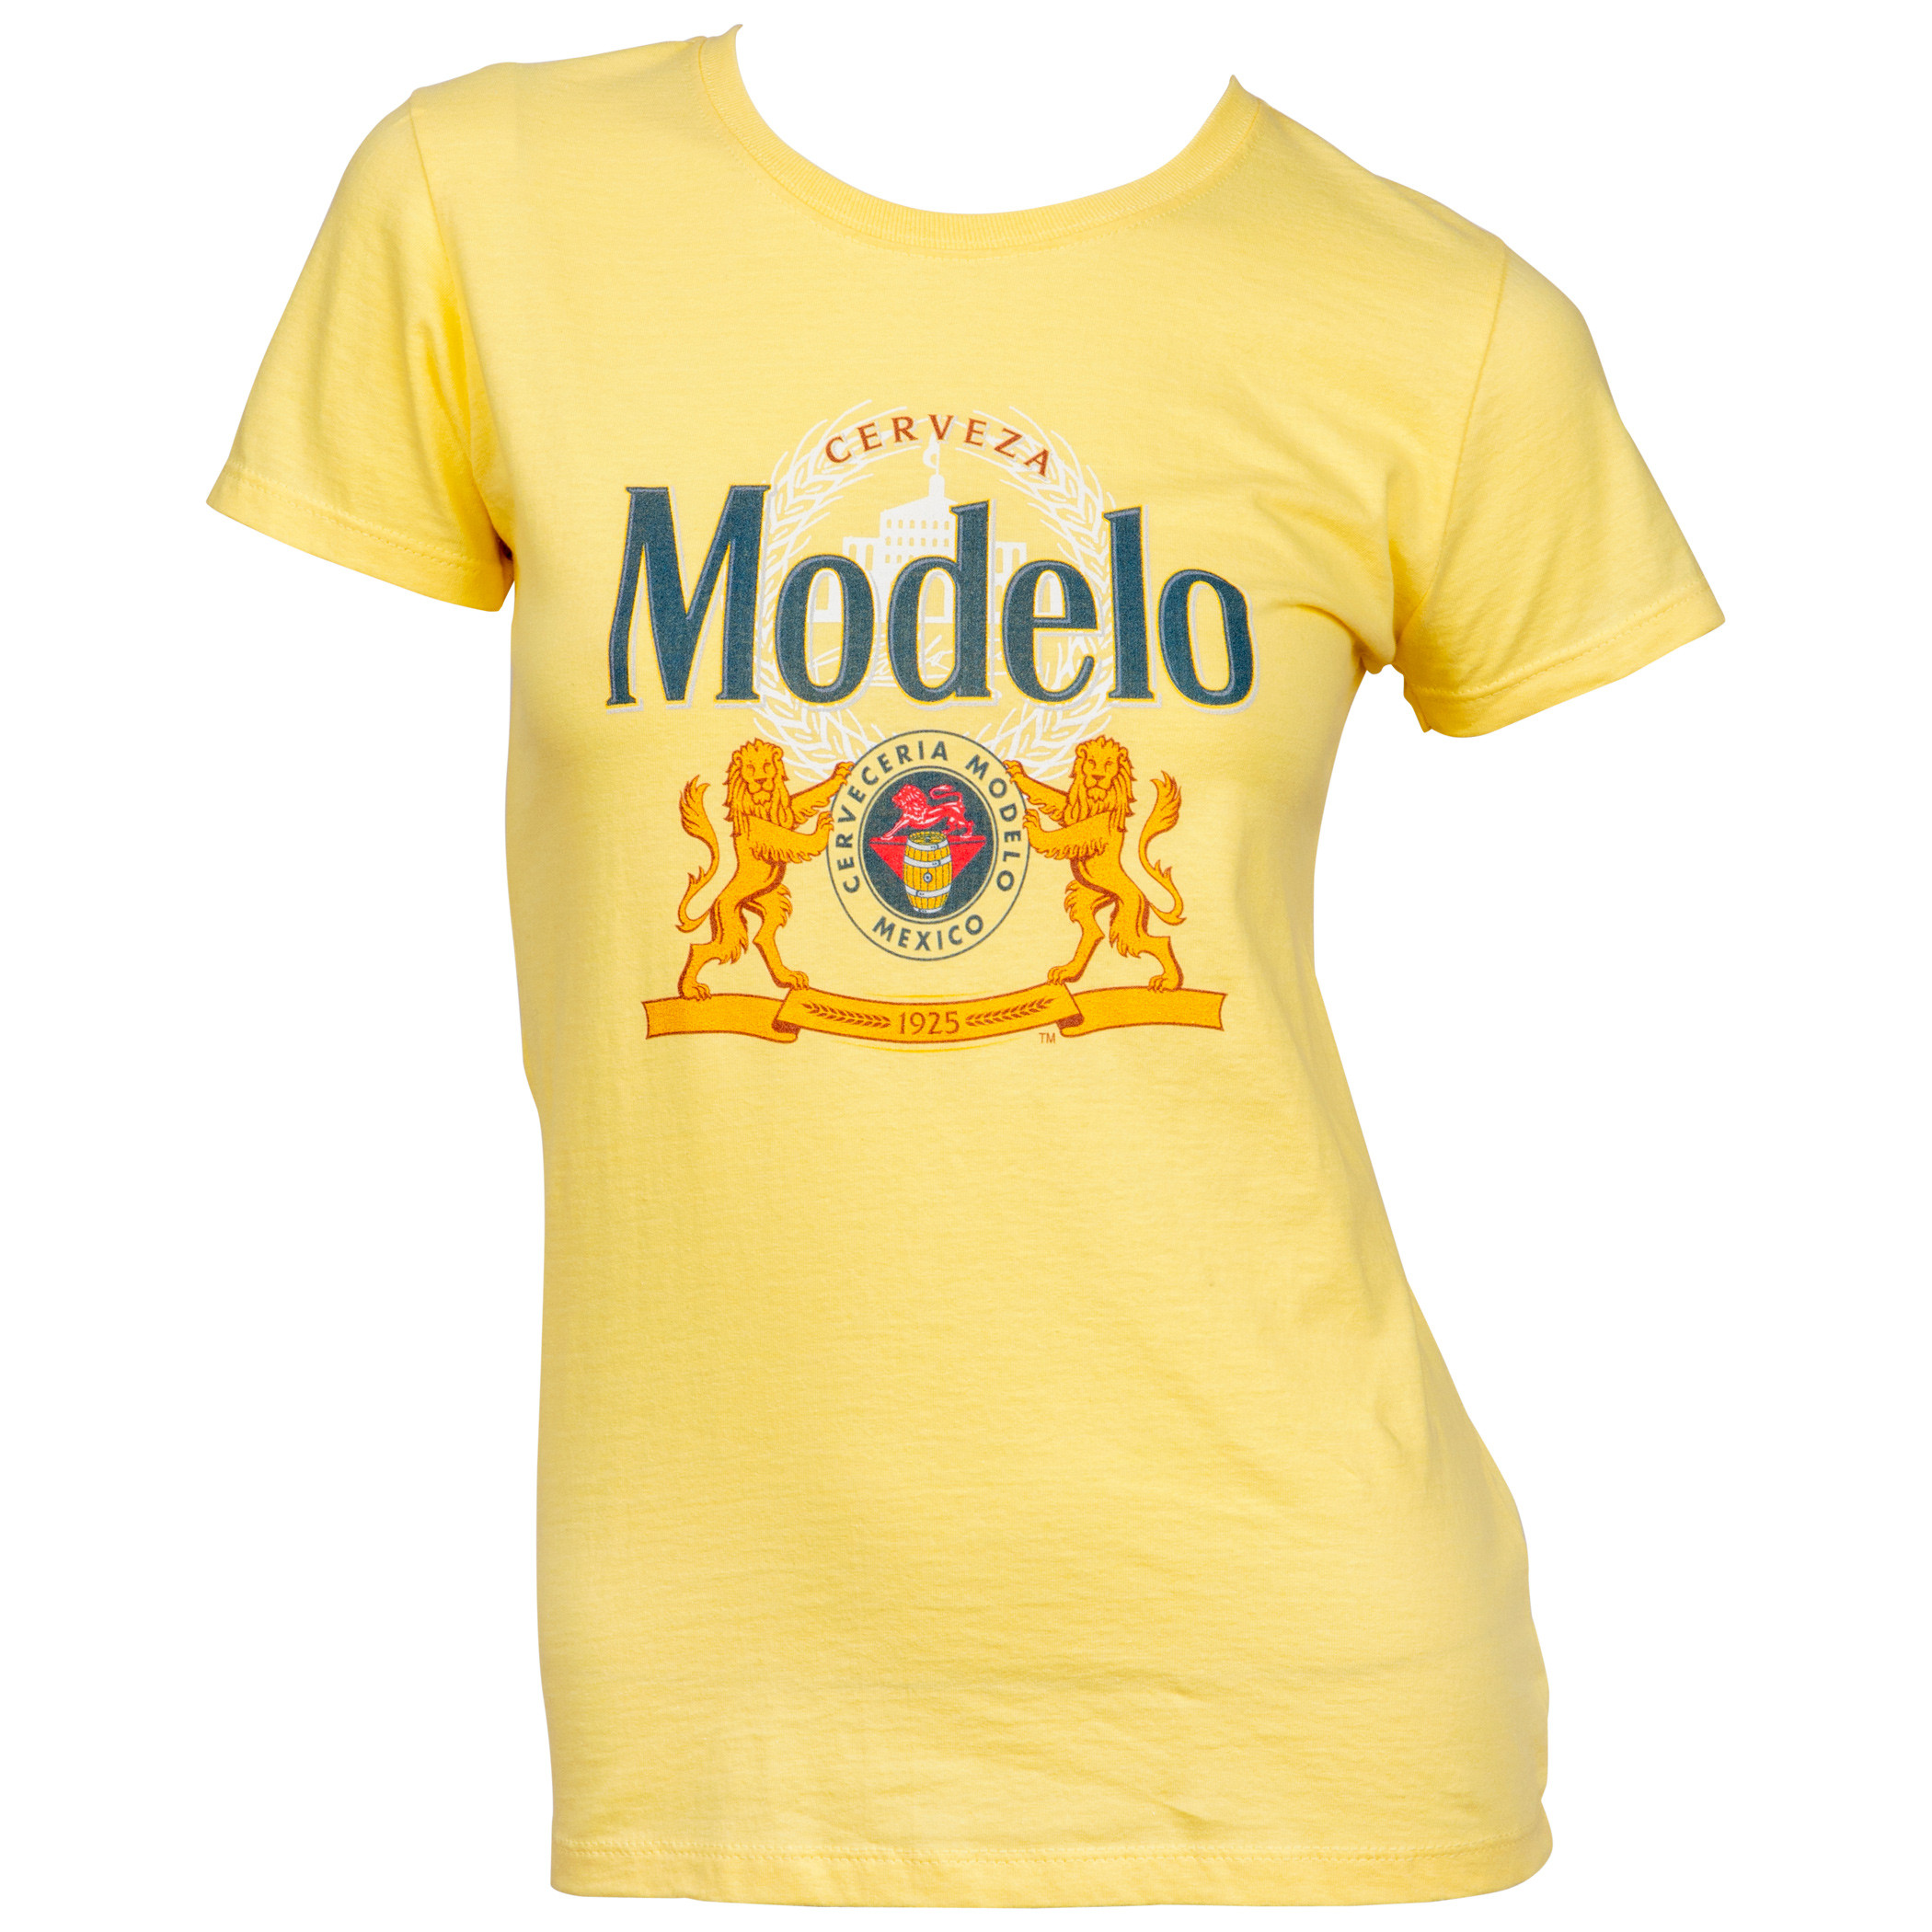 Modelo Cerveza 1925 Label Women's T-Shirt